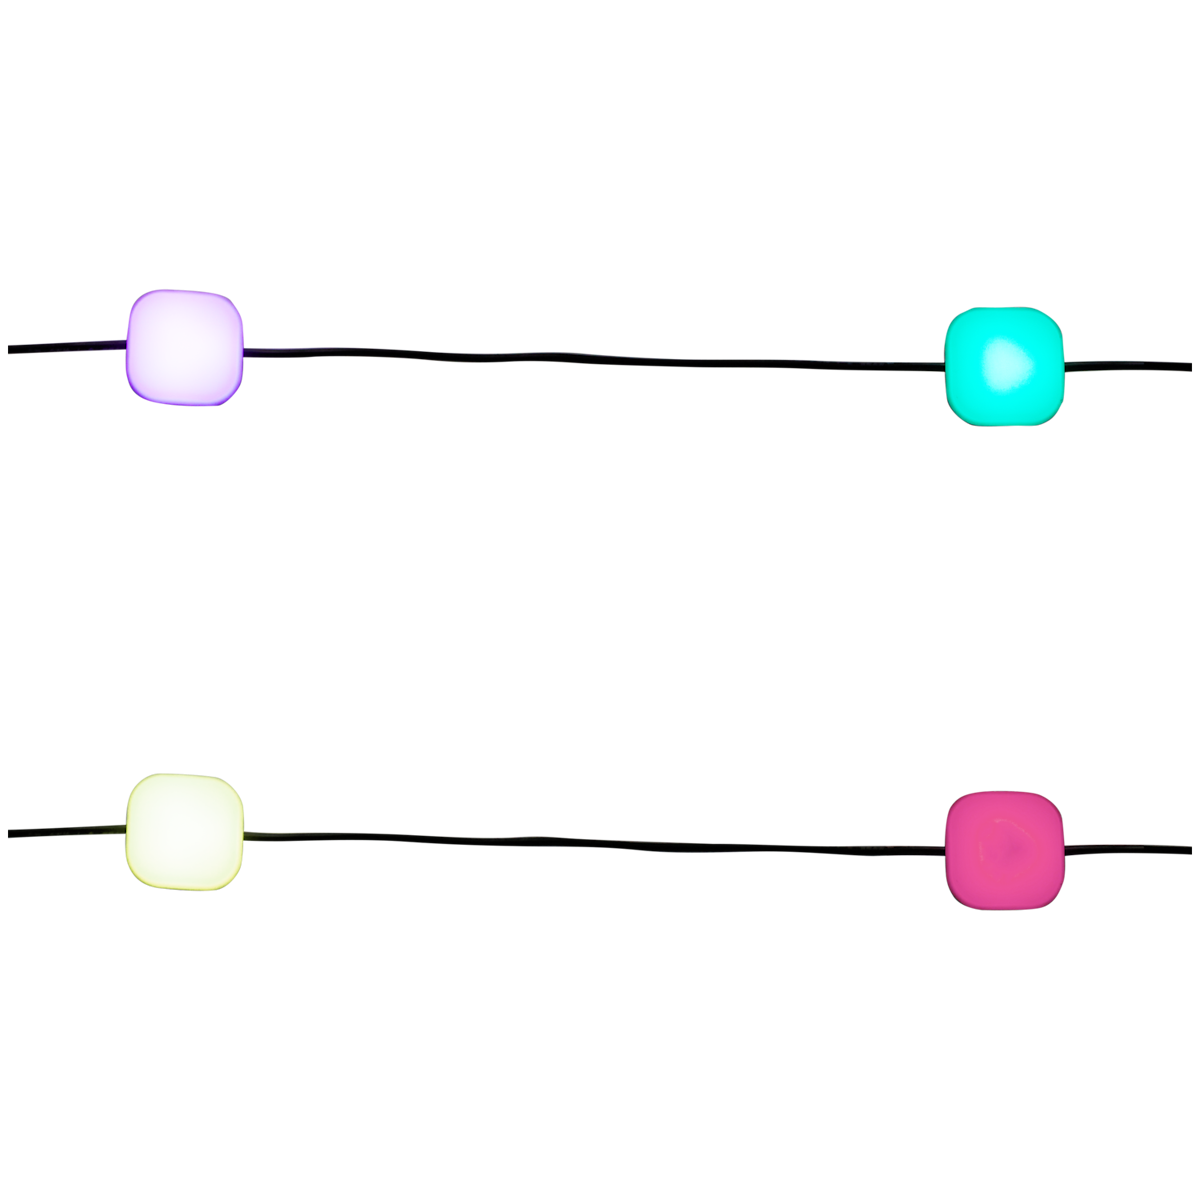 Ghirlanda luminosa con cubi LED